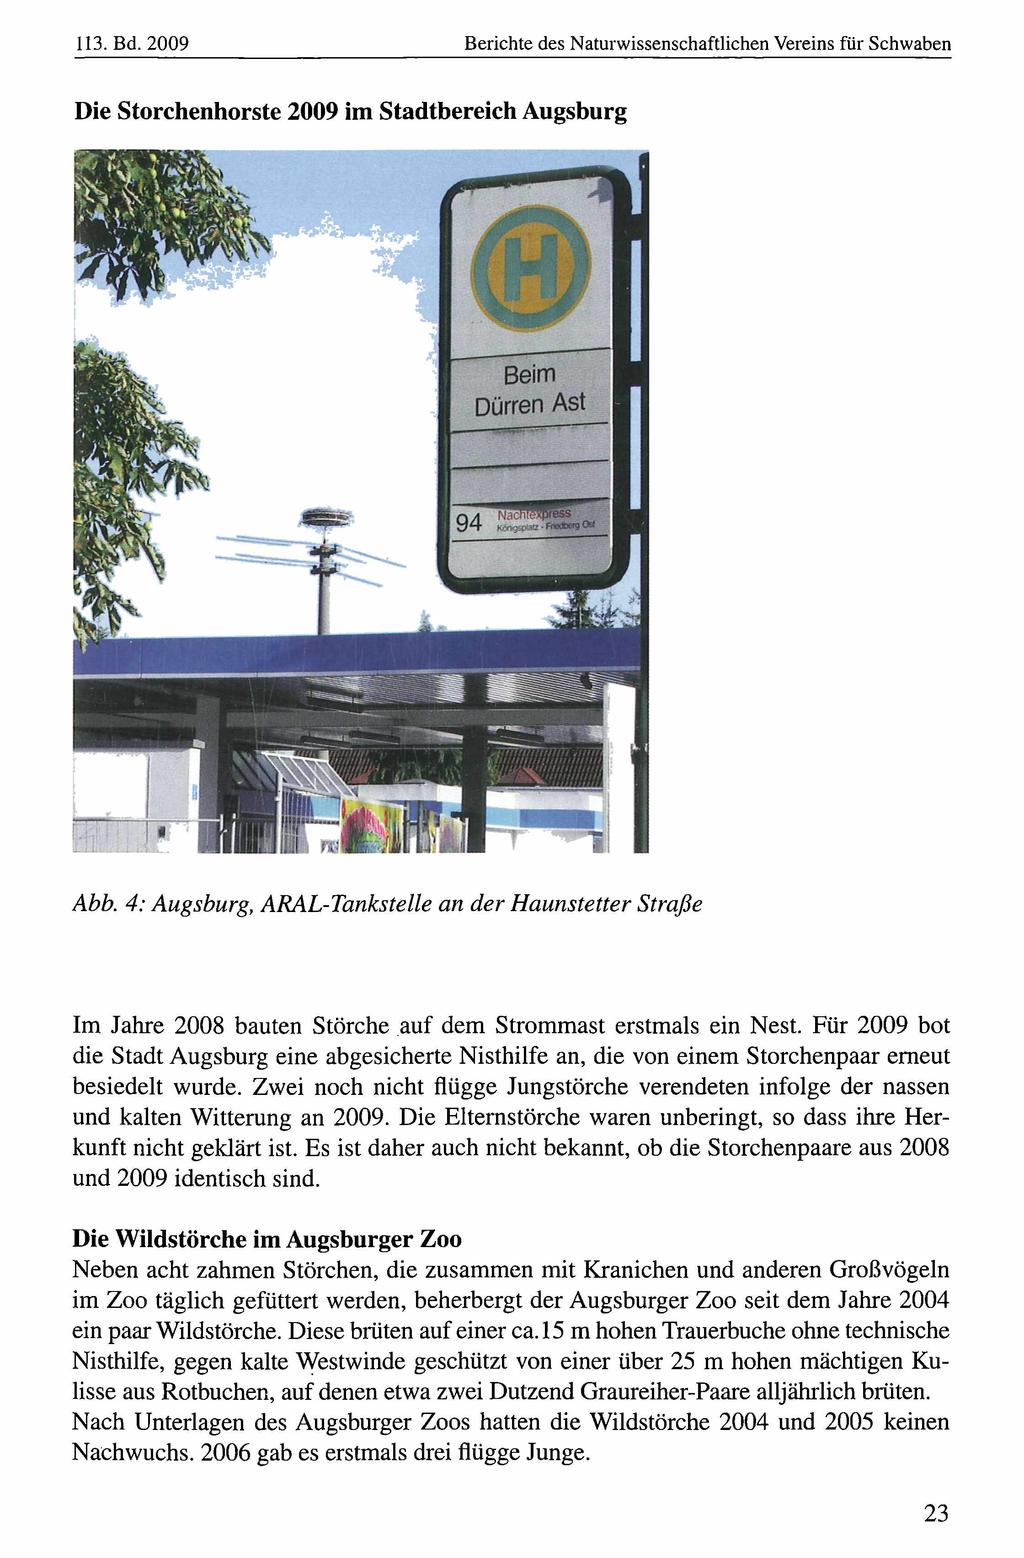 113. Bd. 2009 Naturwissenschaftlicher Verein für Berichte Schwaben, download des Naturwissenschaftlichen unter www.biologiezentrum.